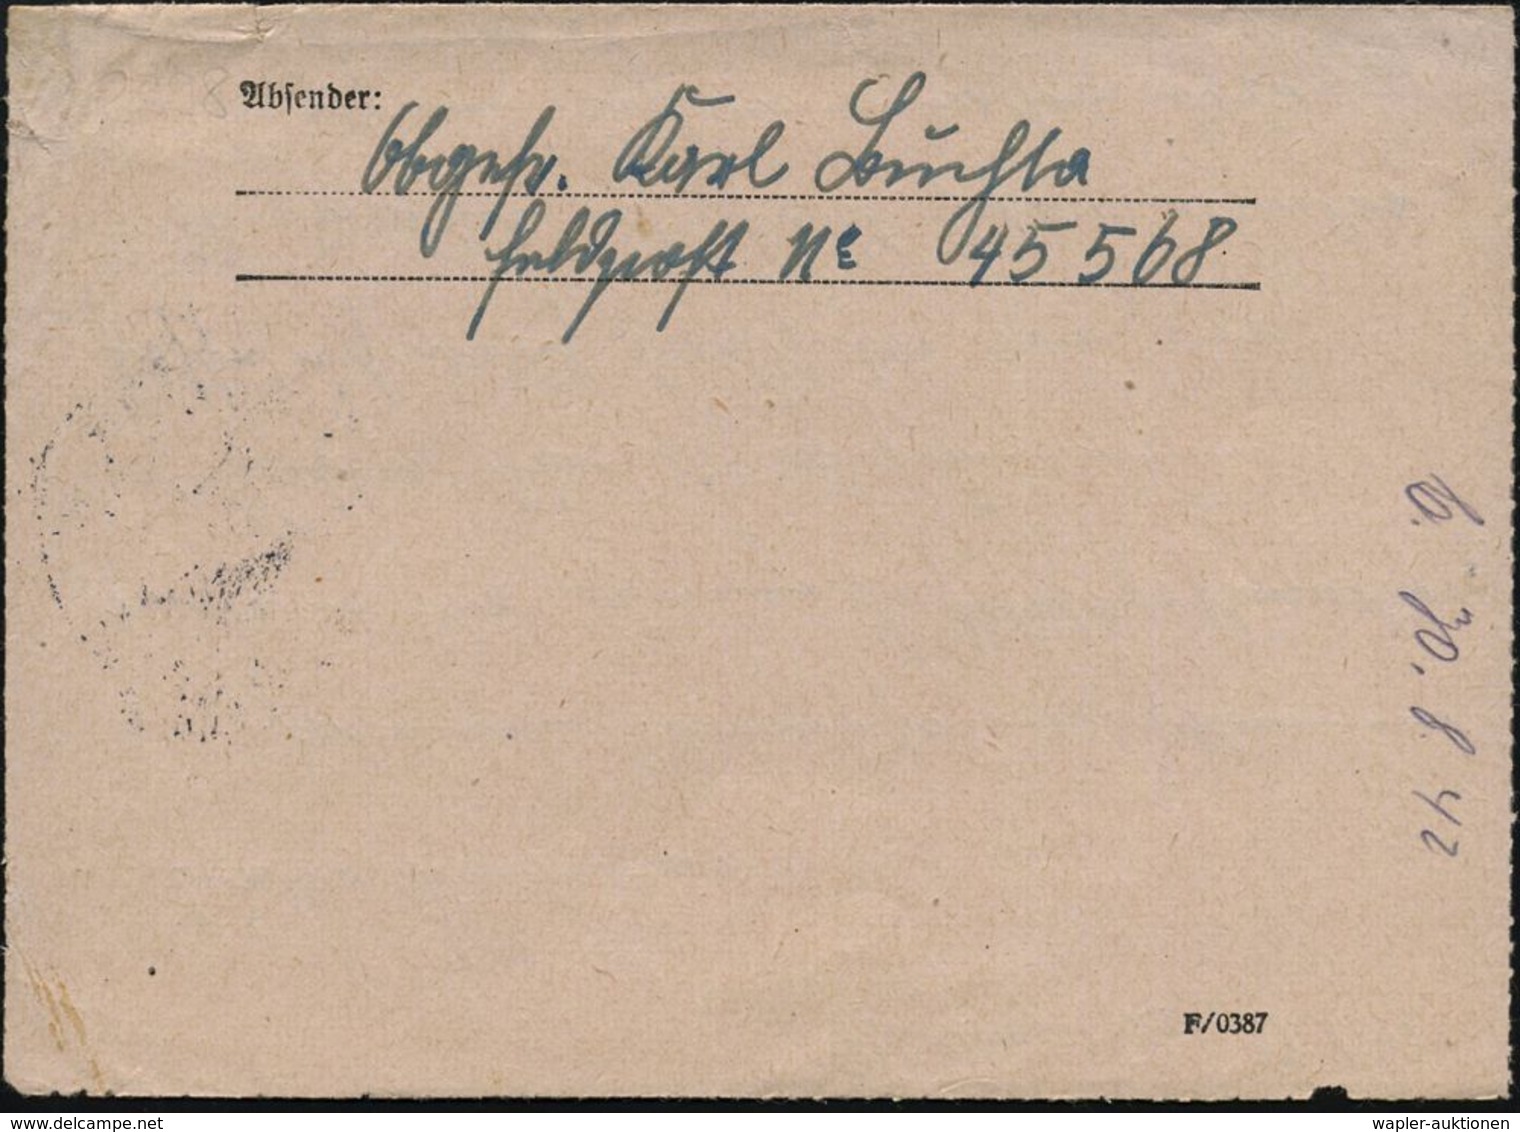 DEUTSCHES REICH 1942 (21.8.) 1K: FELDPOST/f/--- Auf EF Gez. Luftfeldpostmarke (Ju 52), Rs. Hs. Abs.: "Feldpost Nr.45 568 - Aerei